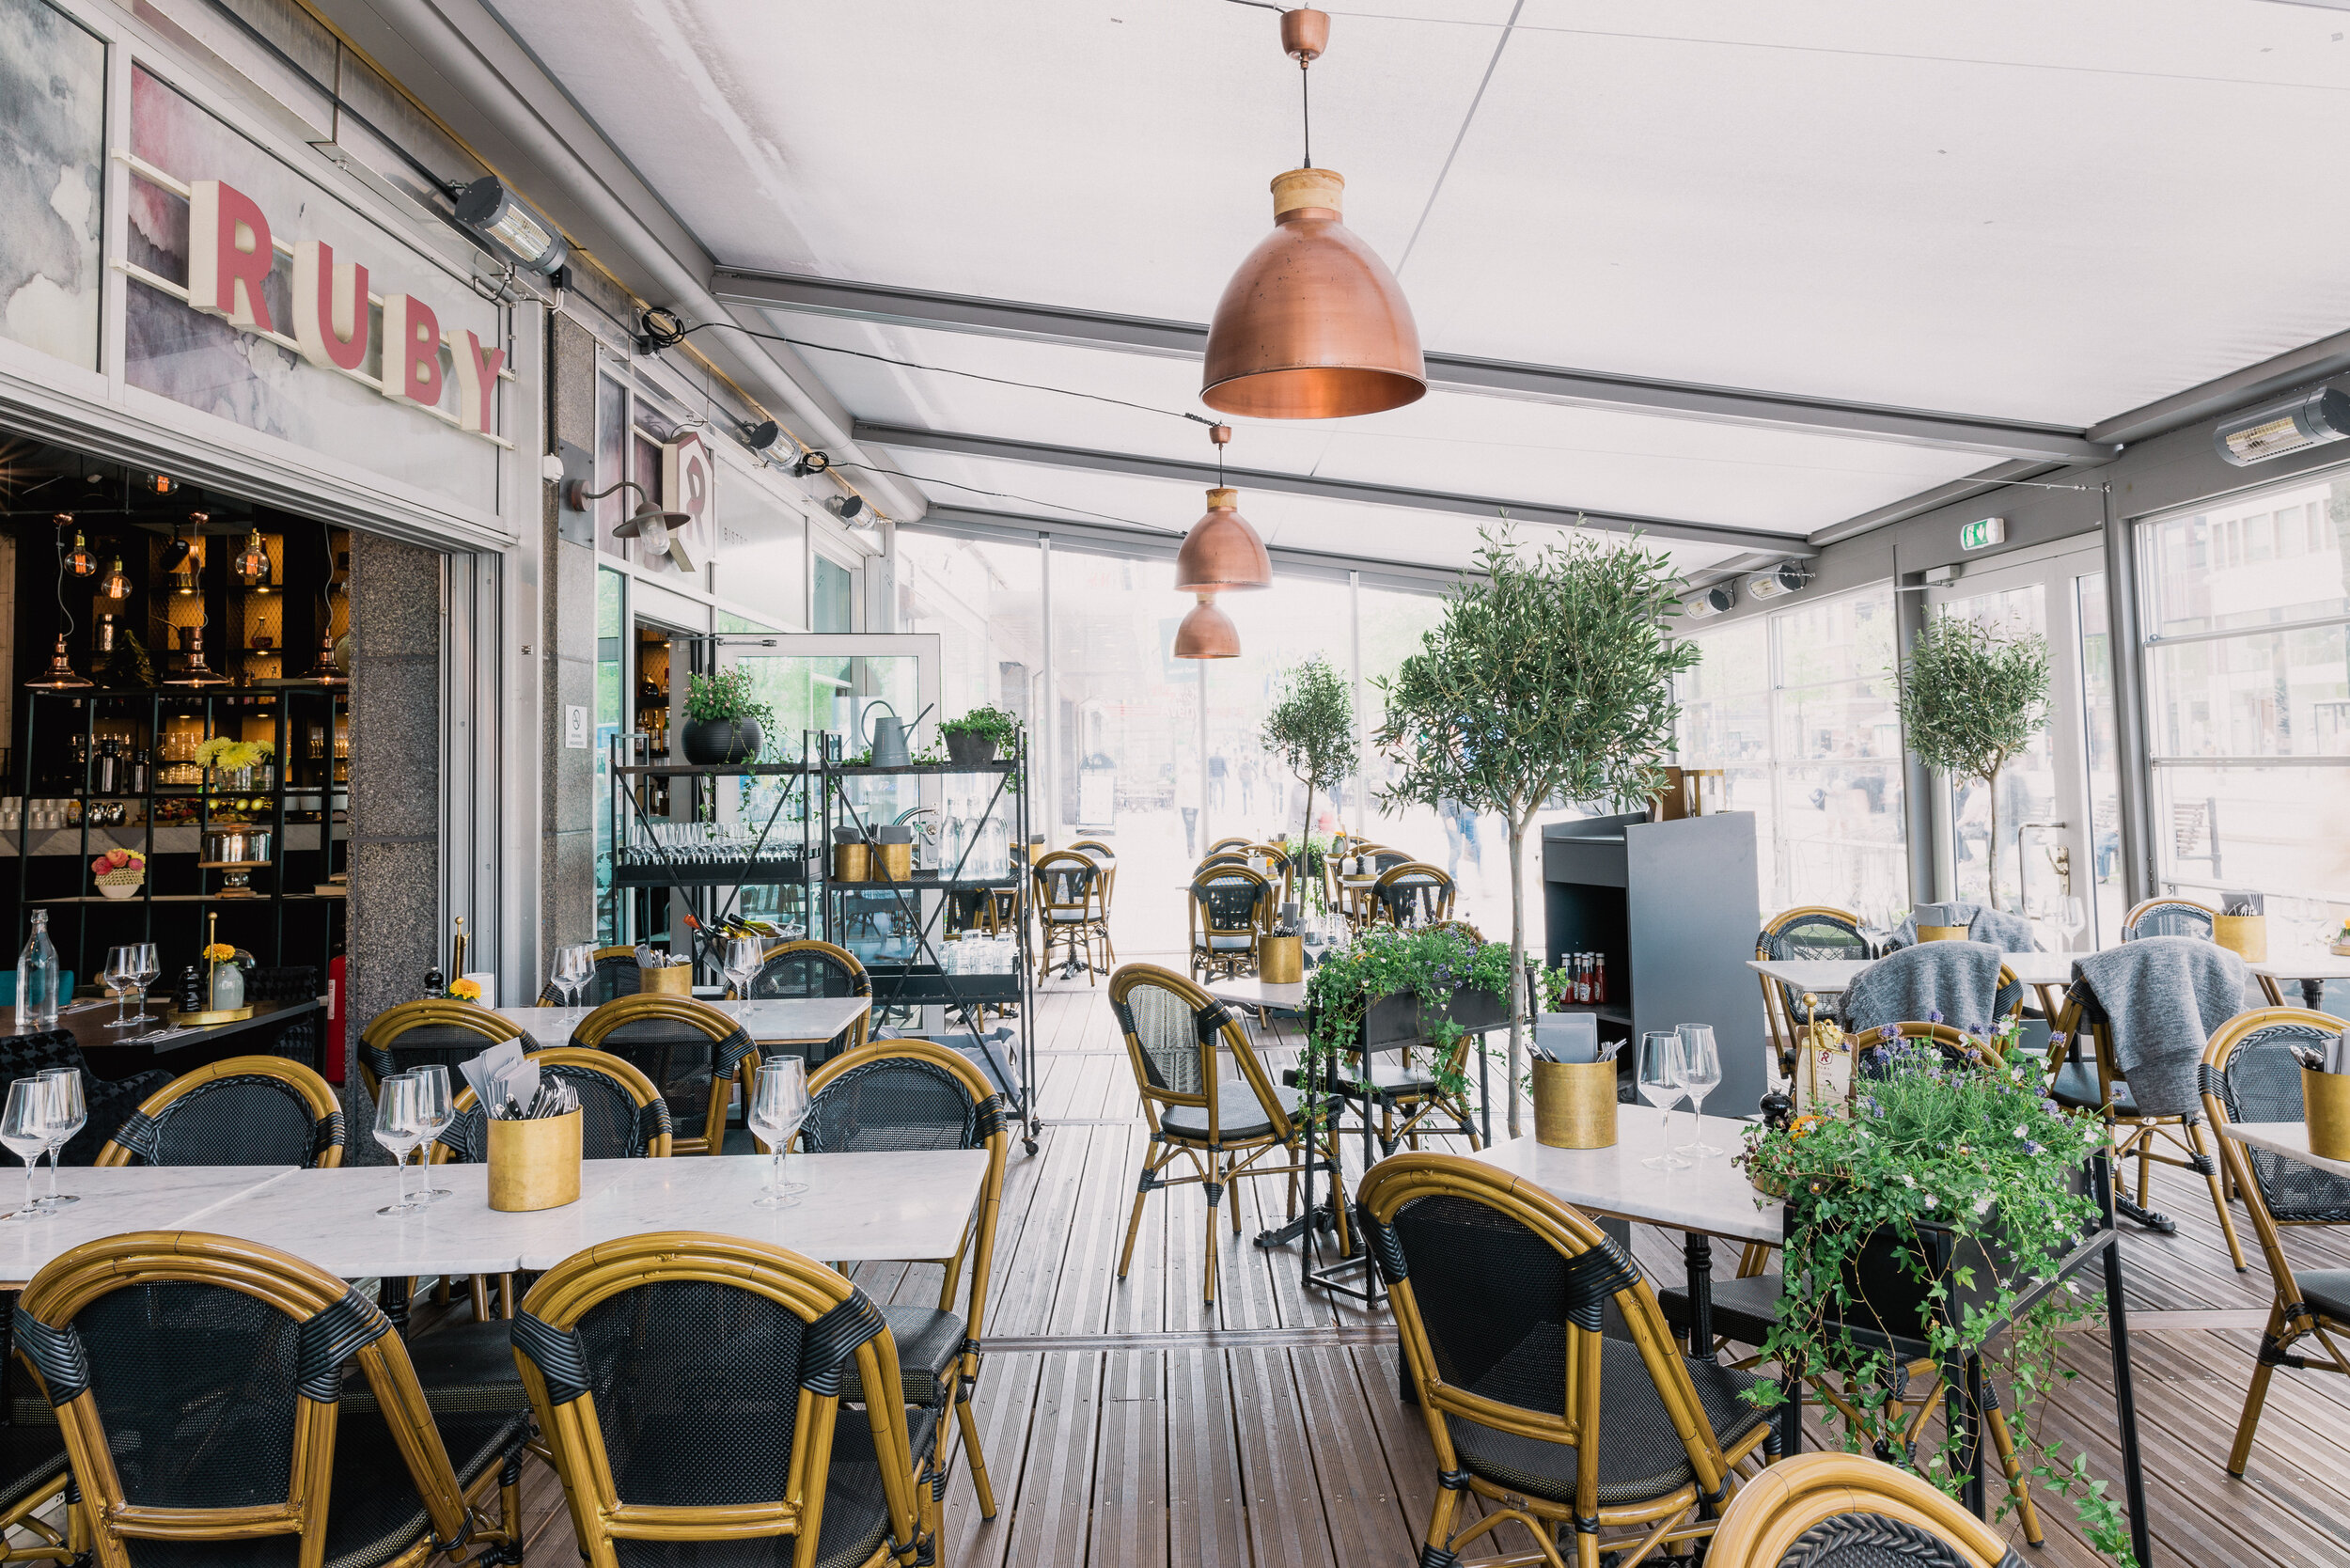 Scandic-Rubinen-restaurant-outdoor tables.jpg